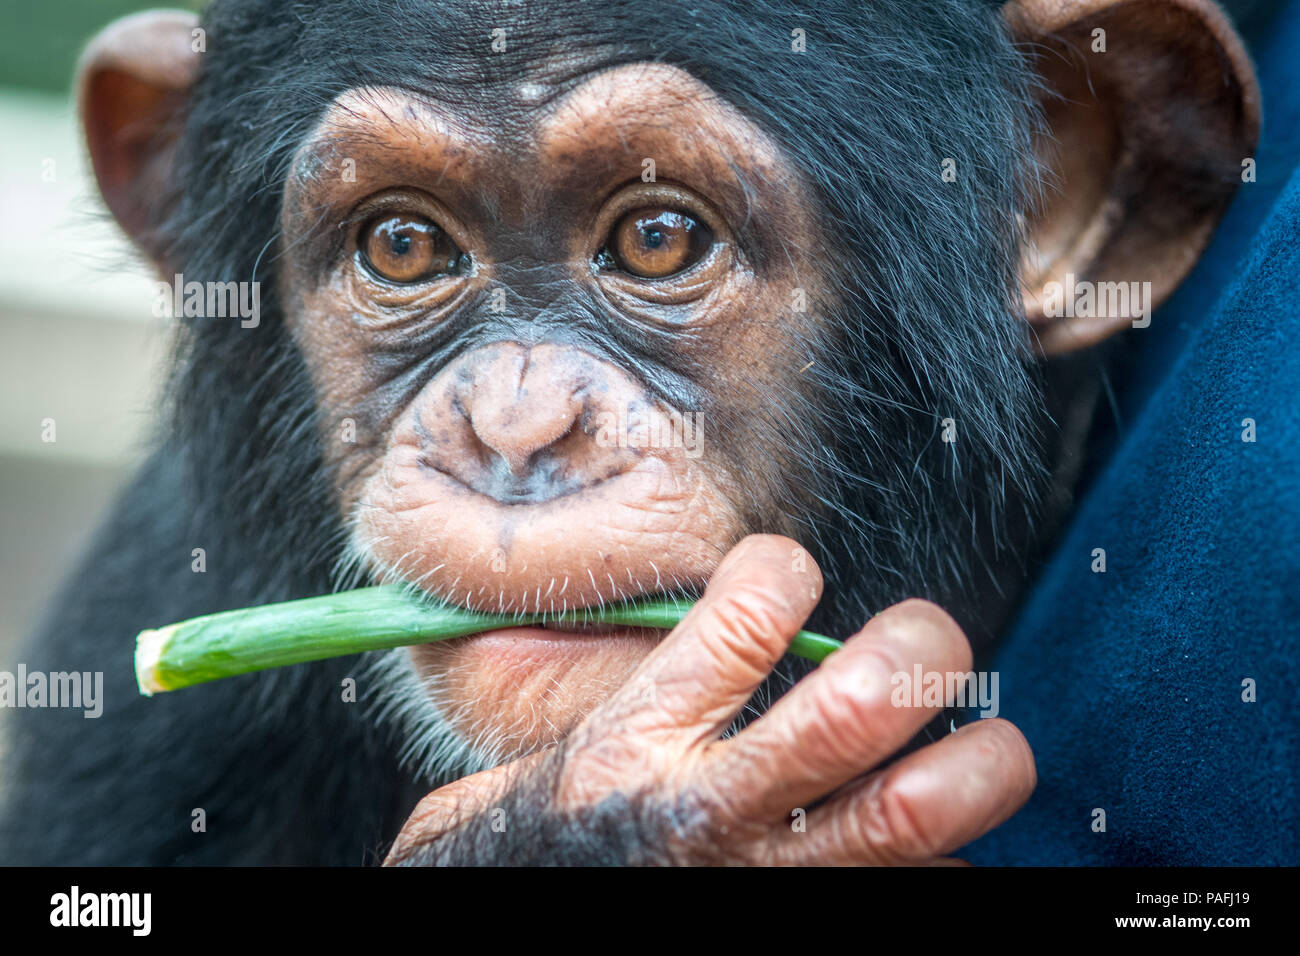 A close up look at the face of a baby chimpanzee.(Pan troglodytes) Ganta Liberia Stock Photo